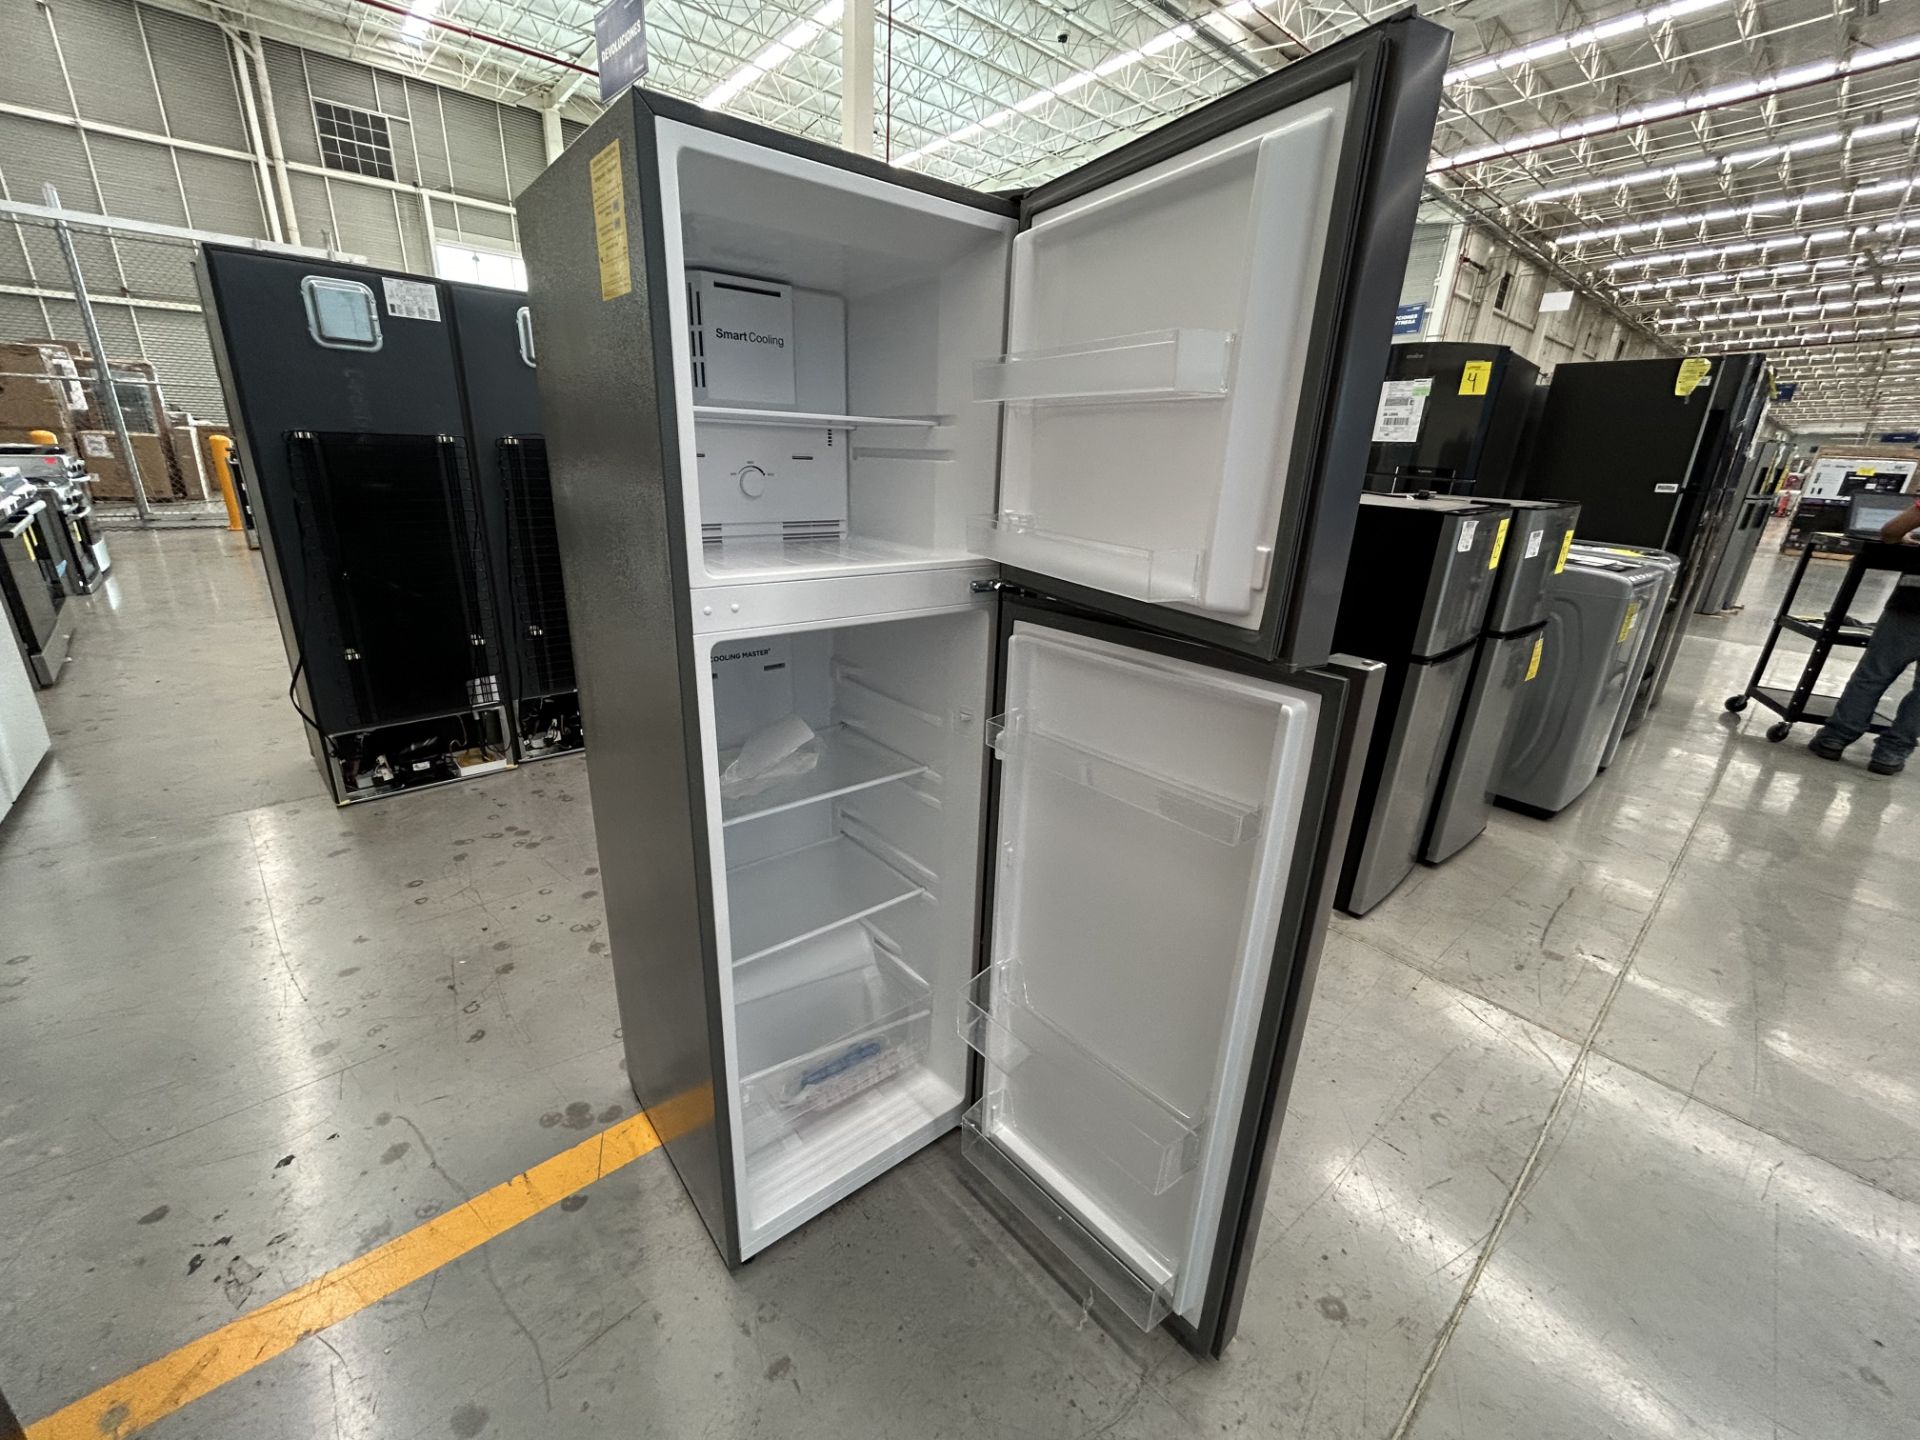 Lote de 2 Refrigeradores contiene: 1 Refrigerador Marca WINIA, Modelo WRT9000AMMX, Serie 012580, Co - Image 5 of 6